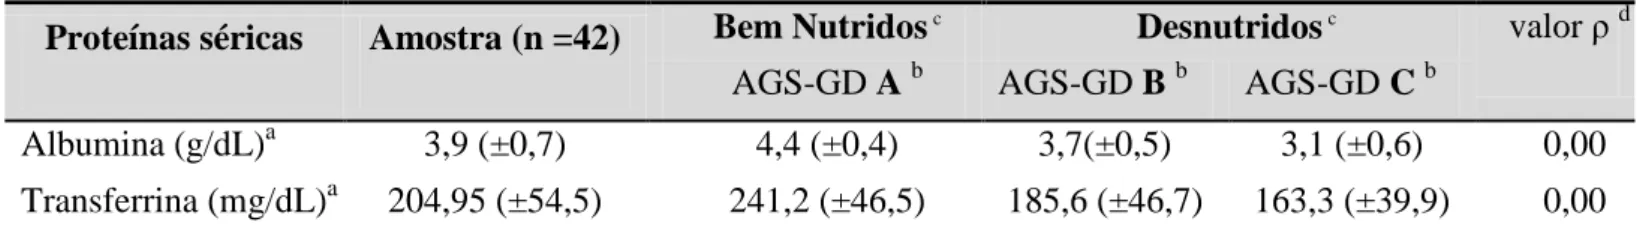 Tabela 4  –  Classificação pela AGS-GD  b  do estado nutricional, médias de albumina e transferrina séricas  dos doentes oncológicos submetidos a nutrição entérica por gastrostomia.